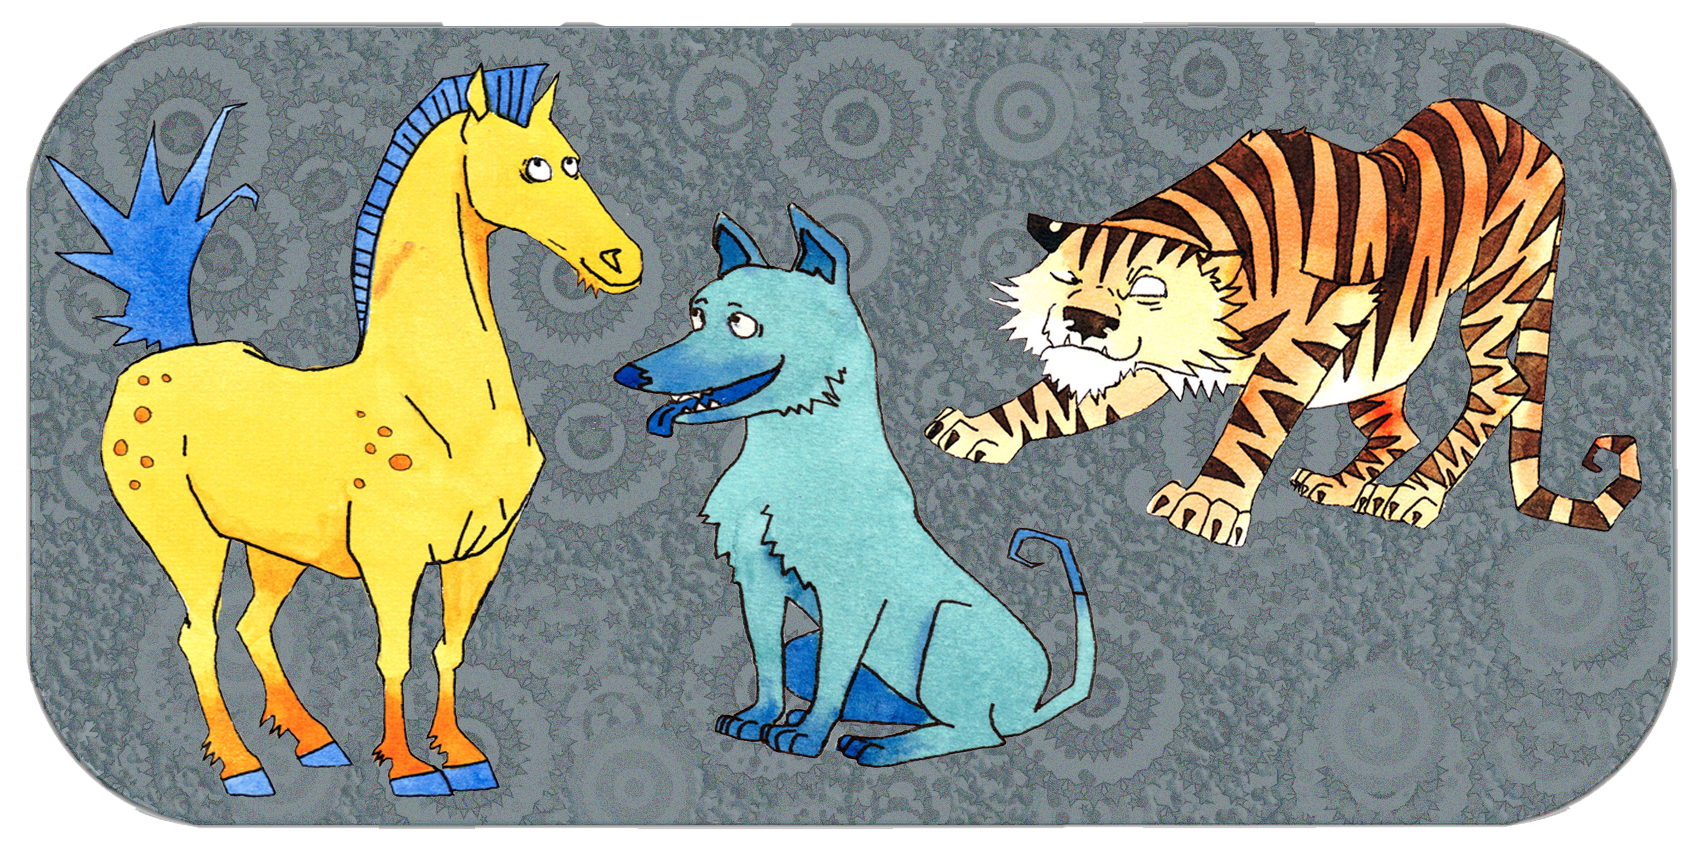 I quattro gruppi compatibili | San He | Gruppo tigre, cane, cavallo